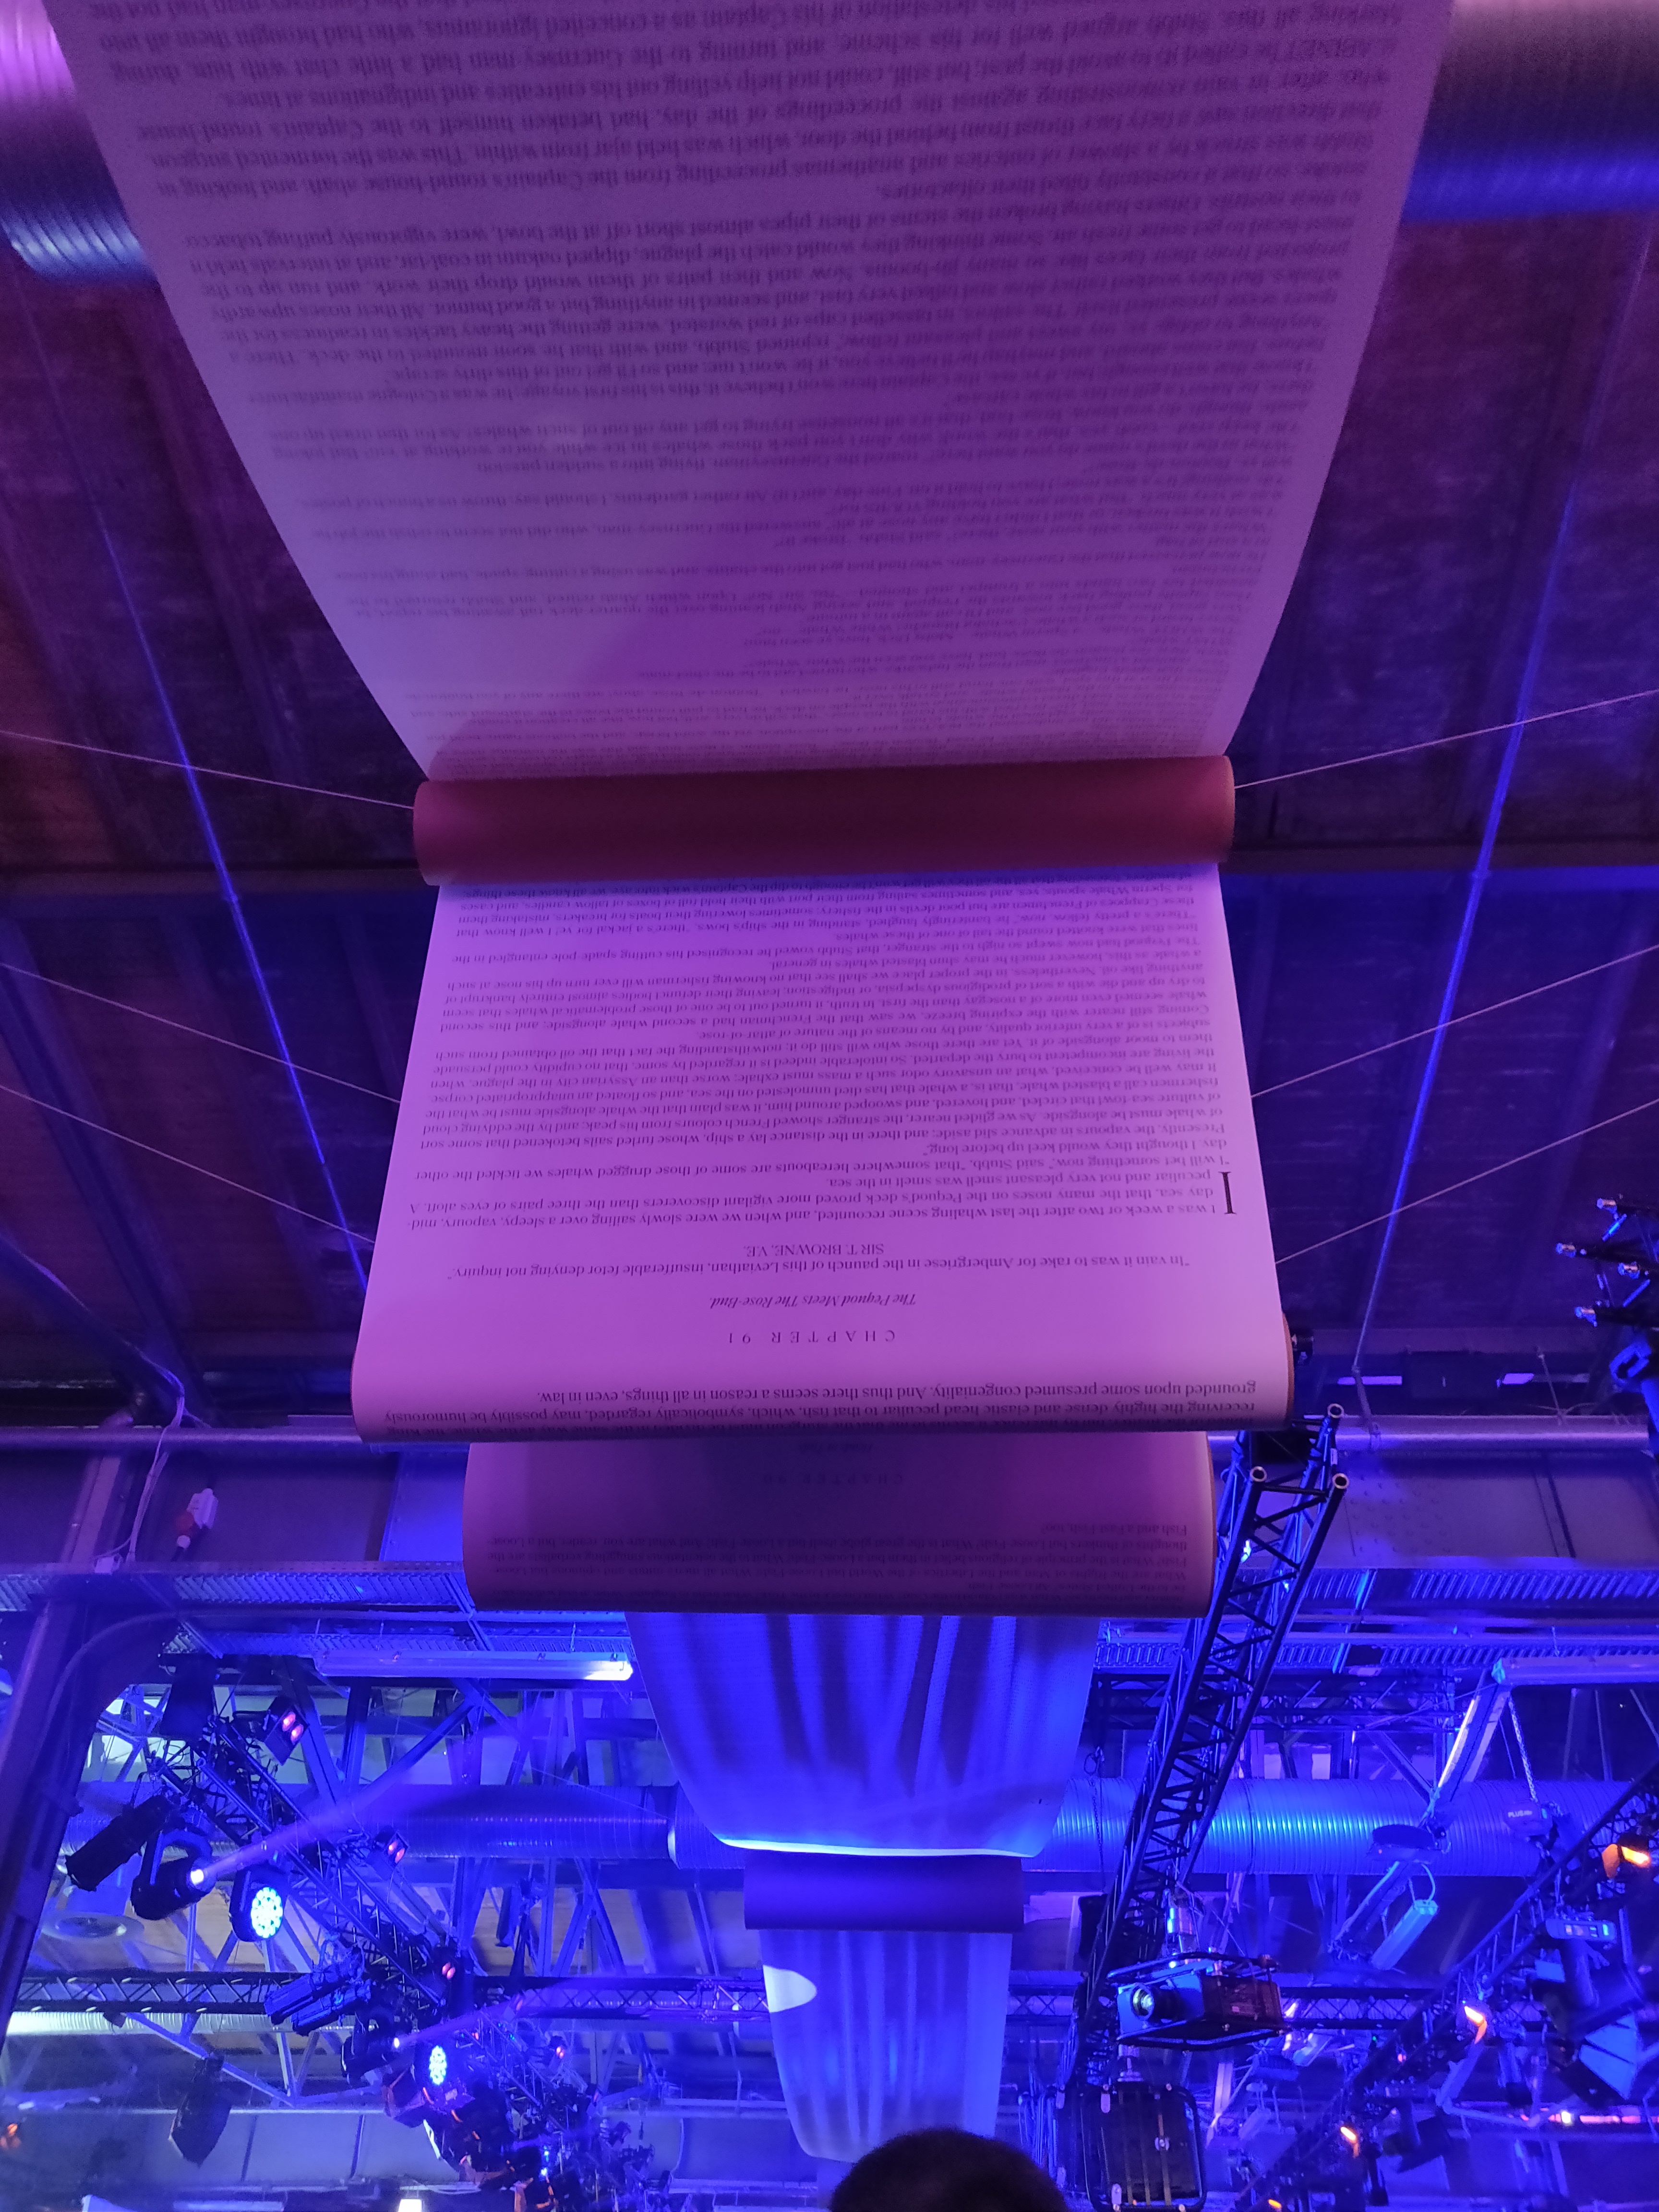 Der Inhalt von Moby-Dick, Roman von Herman Melville, verbindet die Hallen der re:publica 2019 miteinander